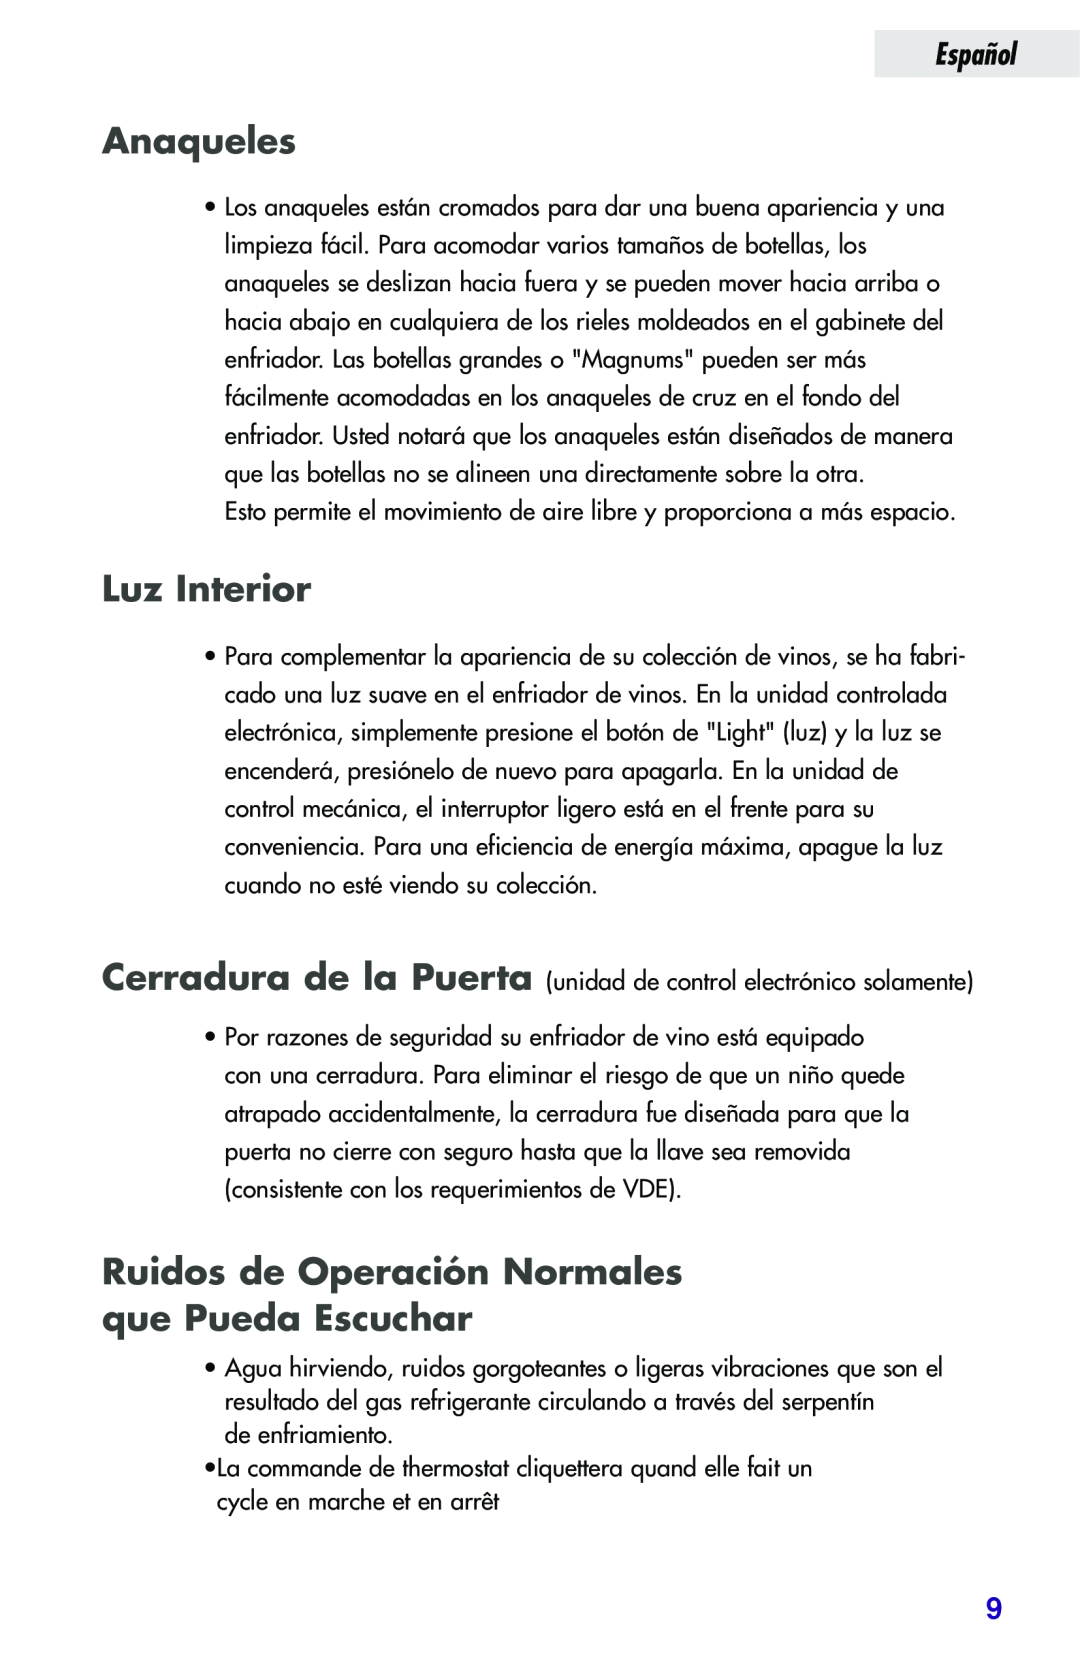 Haier JC-82GB manual Anaqueles, Luz Interior, Ruidos de Operación Normales que Pueda Escuchar, Español 